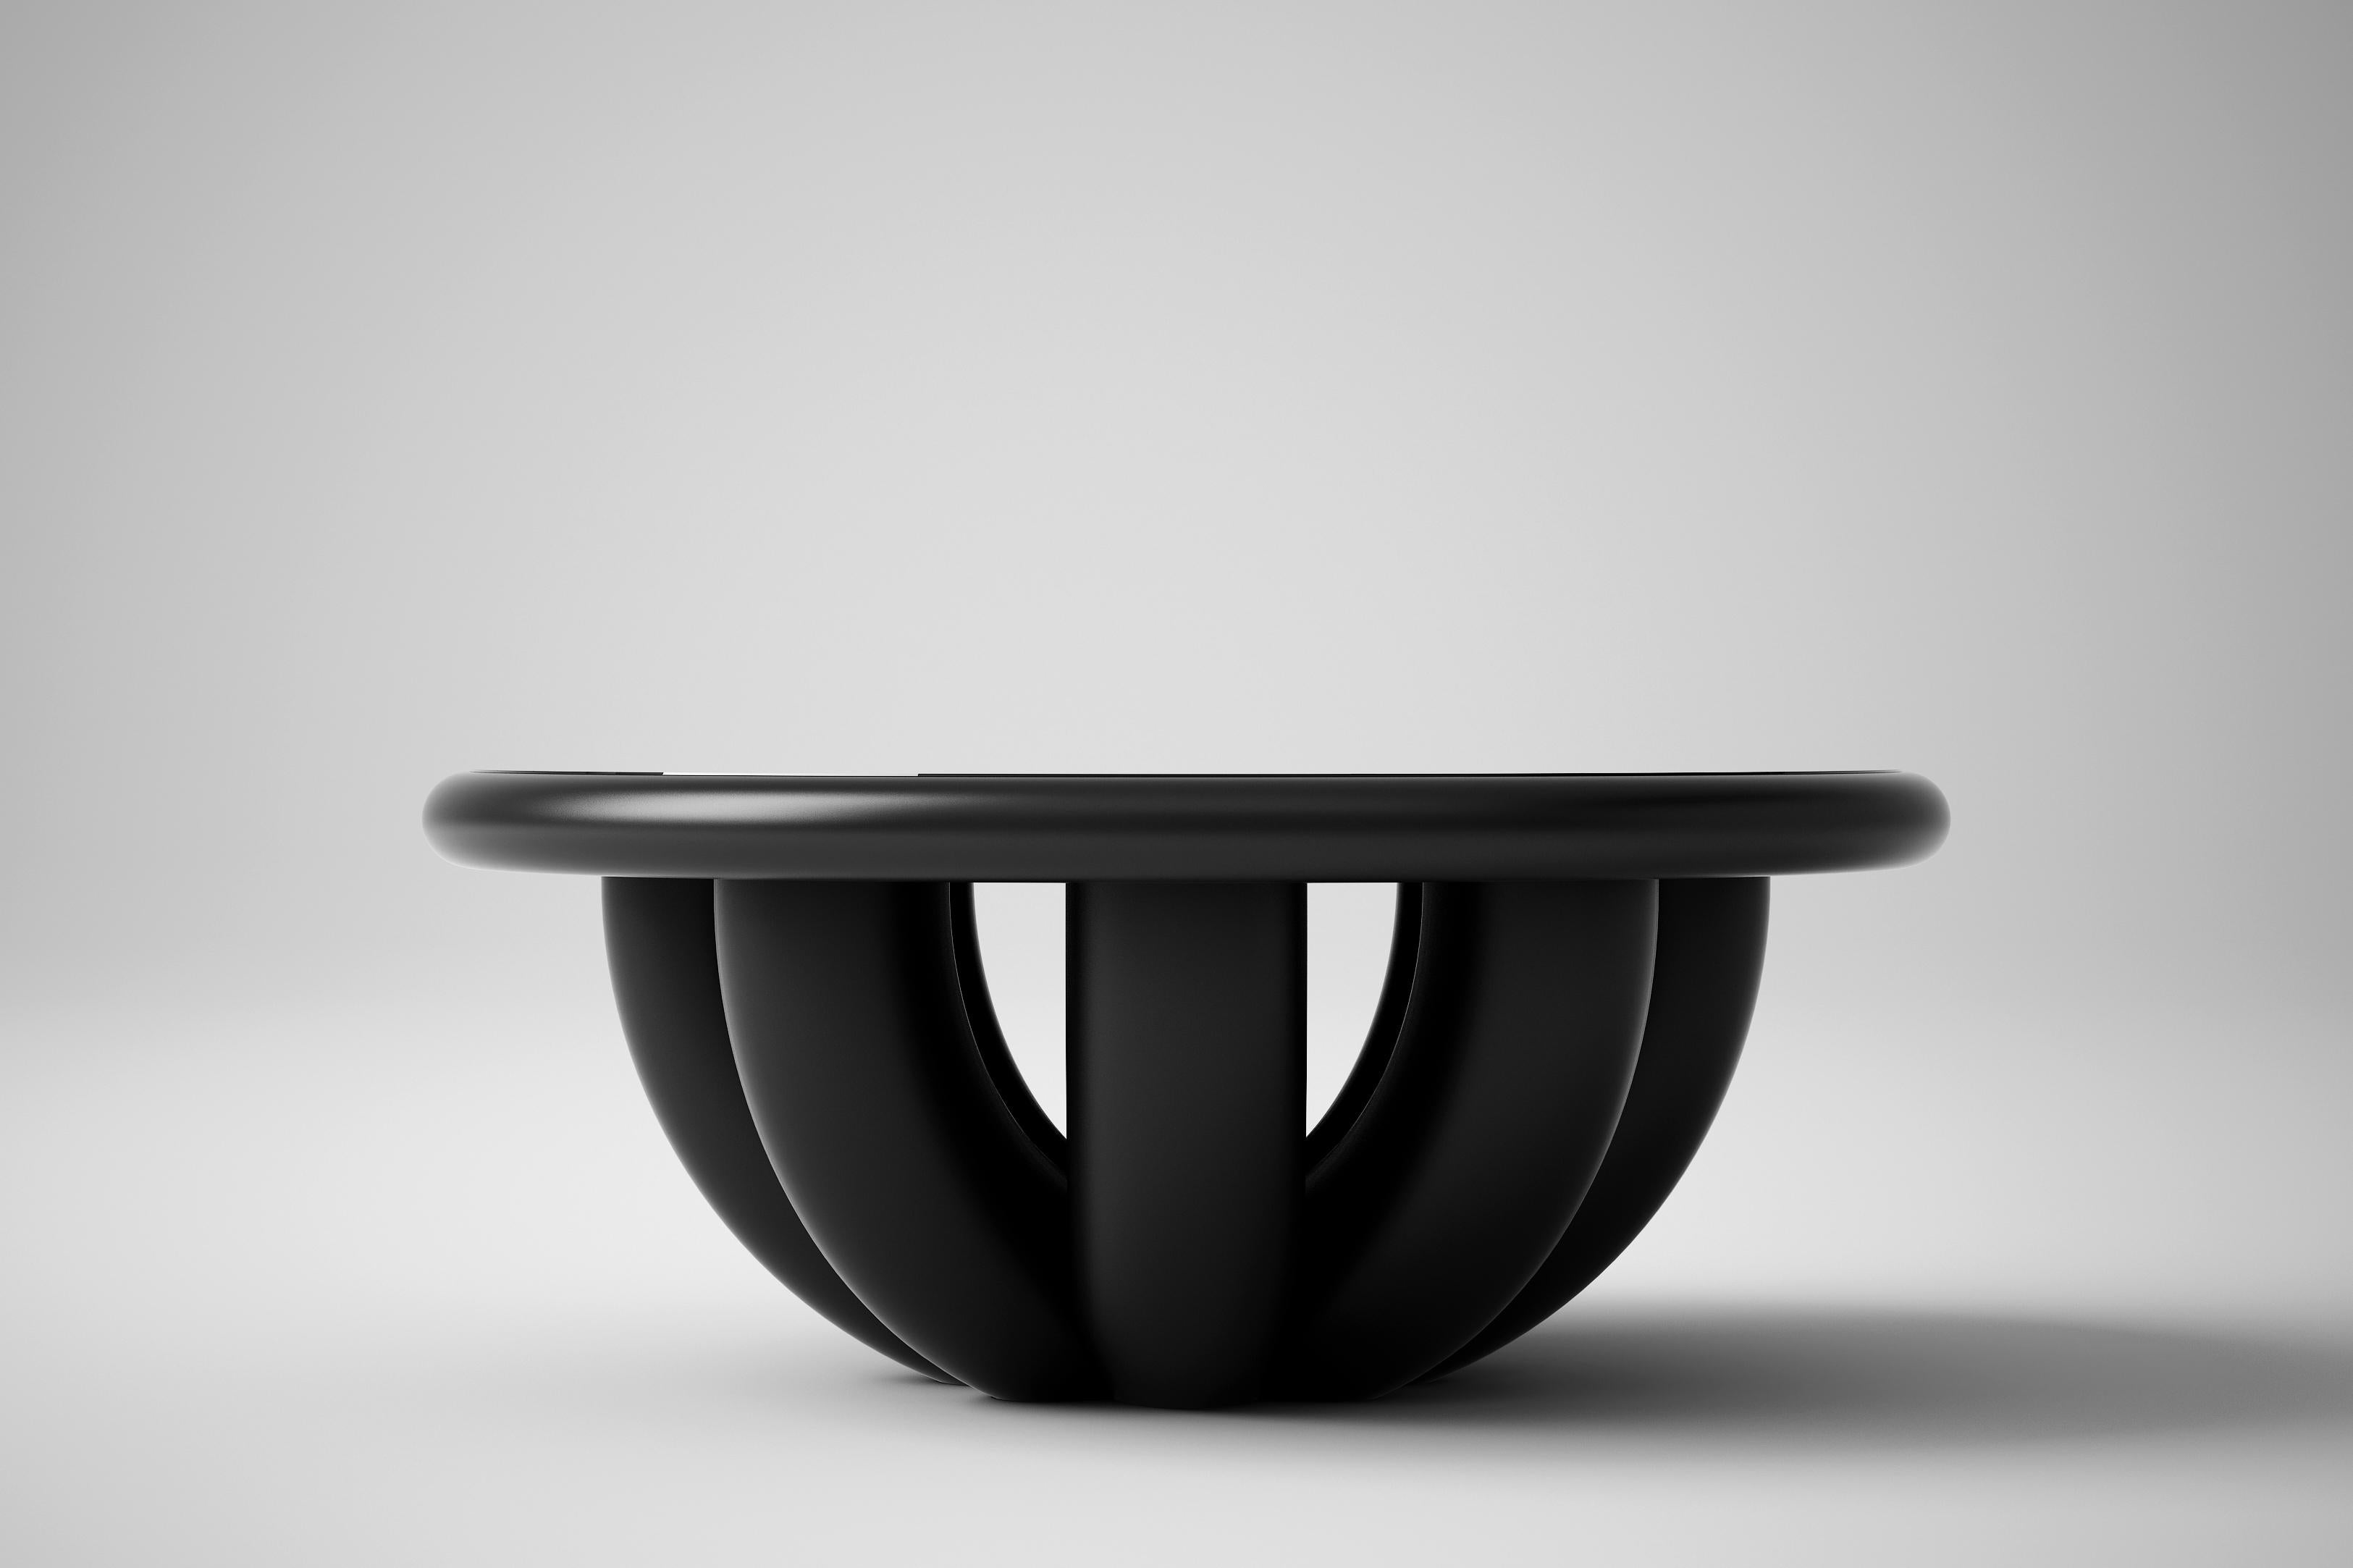 Bold Niedriger Tisch von Tolga Sencer
Abmessungen: 35 x 35 x 85 cm
MATERIALIEN: schwarz lackiertes Holz, schwarzes Glas über Holzplatte

In der Bold Collection'S haben die Körper starke symmetrische Strukturen. Die Rotation dicker und breiter